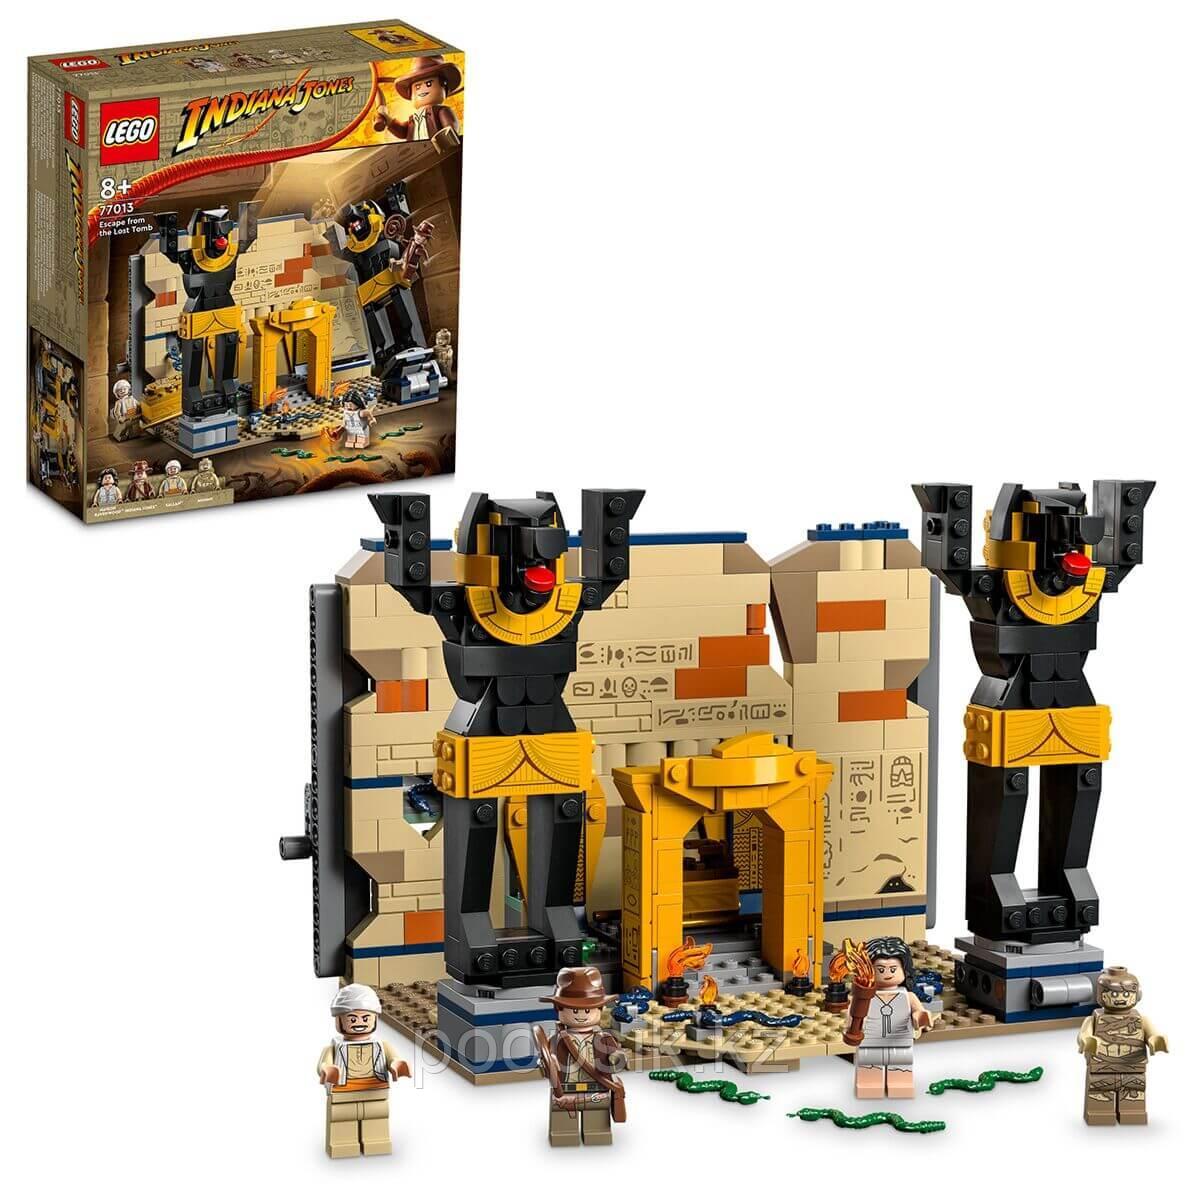 Lego Indiana Jones Побег Индианы Джонса из затерянной гробницы 77013